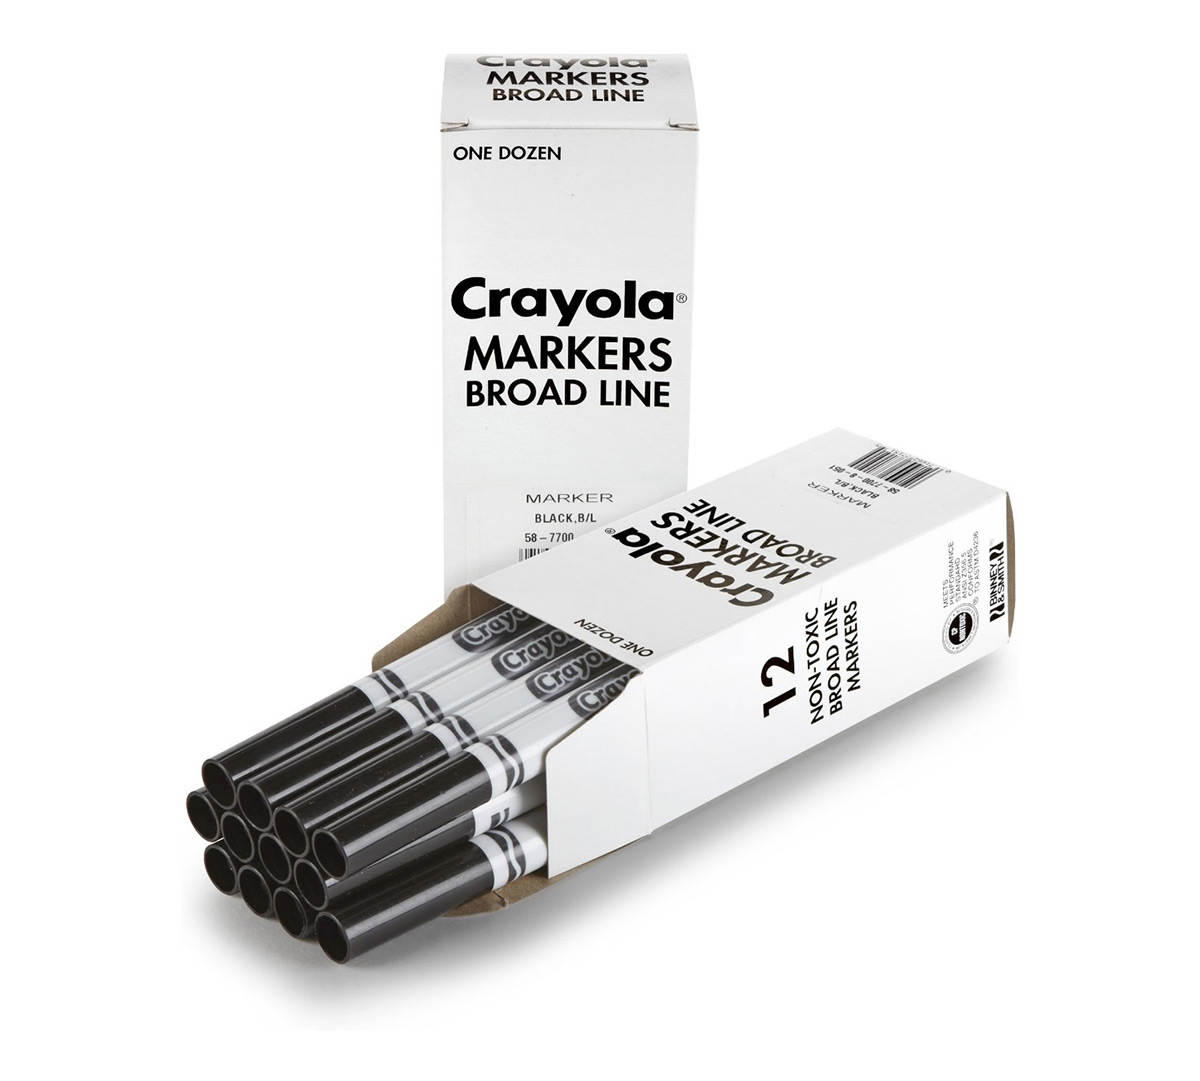 Download Crayola Black Markers in Bulk, 12 Count | Crayola.com | Crayola